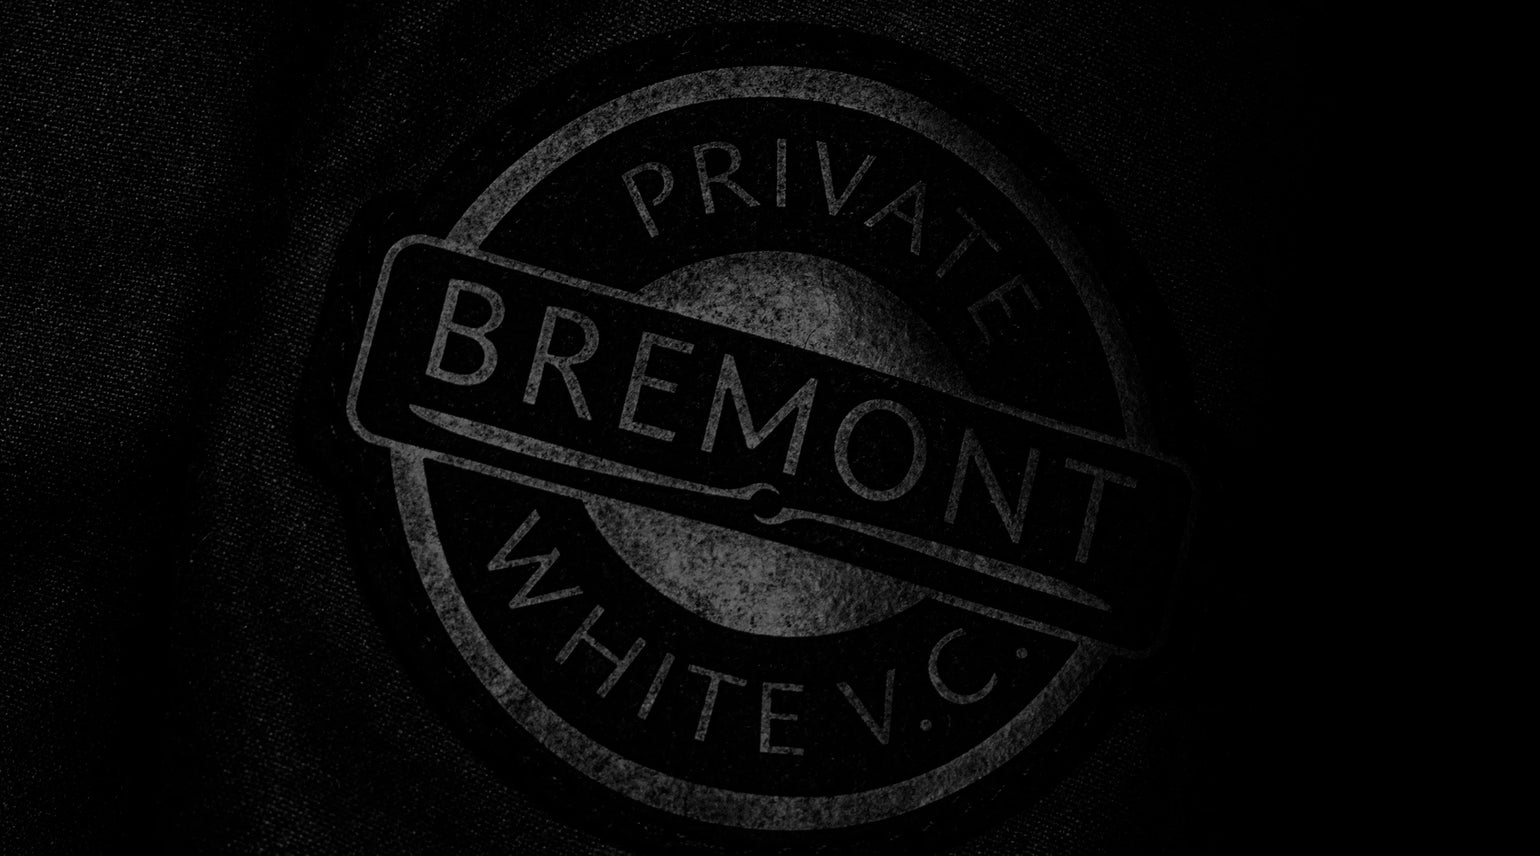 Bremont Watch Company Pty Ltd